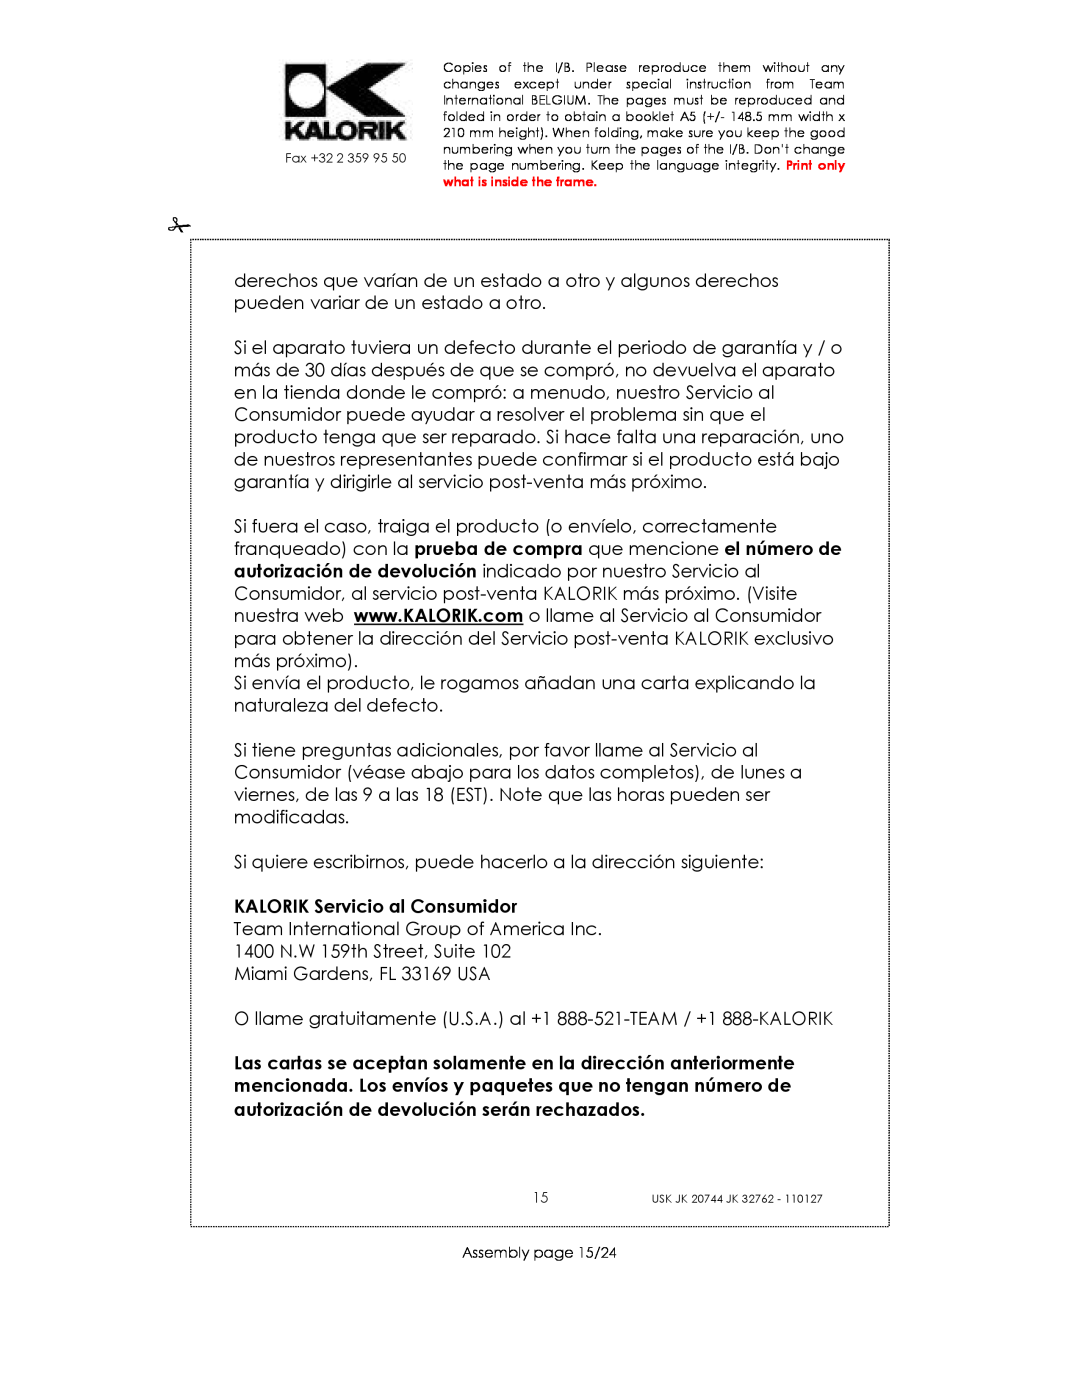 Kalorik USK JK 20744, USK JK 32762 manual KALORIK Servicio al Consumidor, Assembly page 15/24 